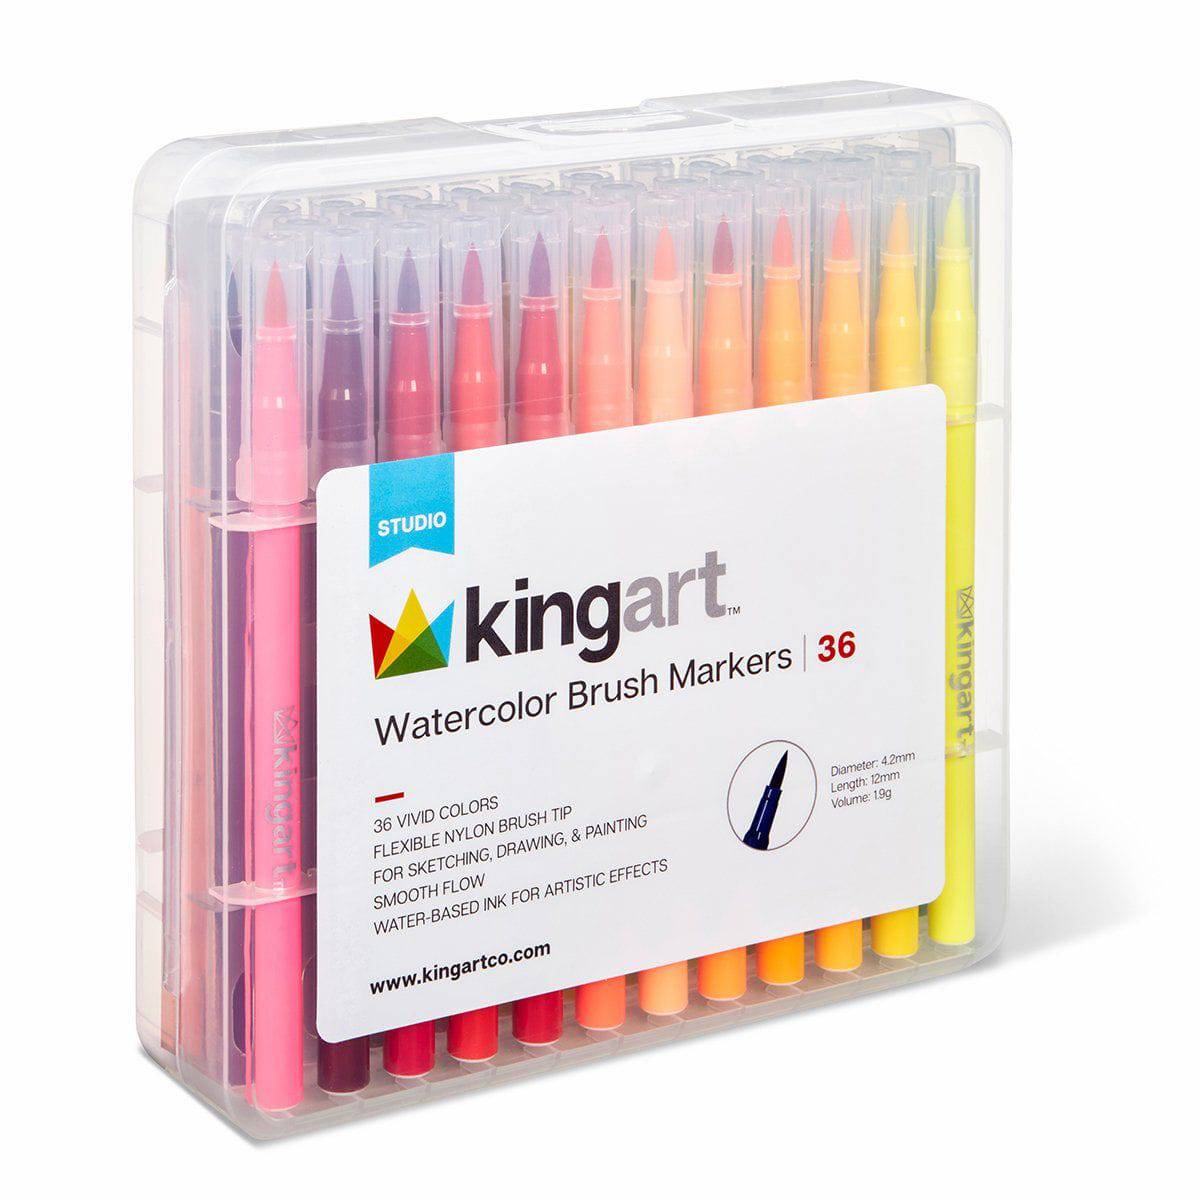 Kingart 96-Piece Unique Colors Dual-Tip Brush Pen Art Markers